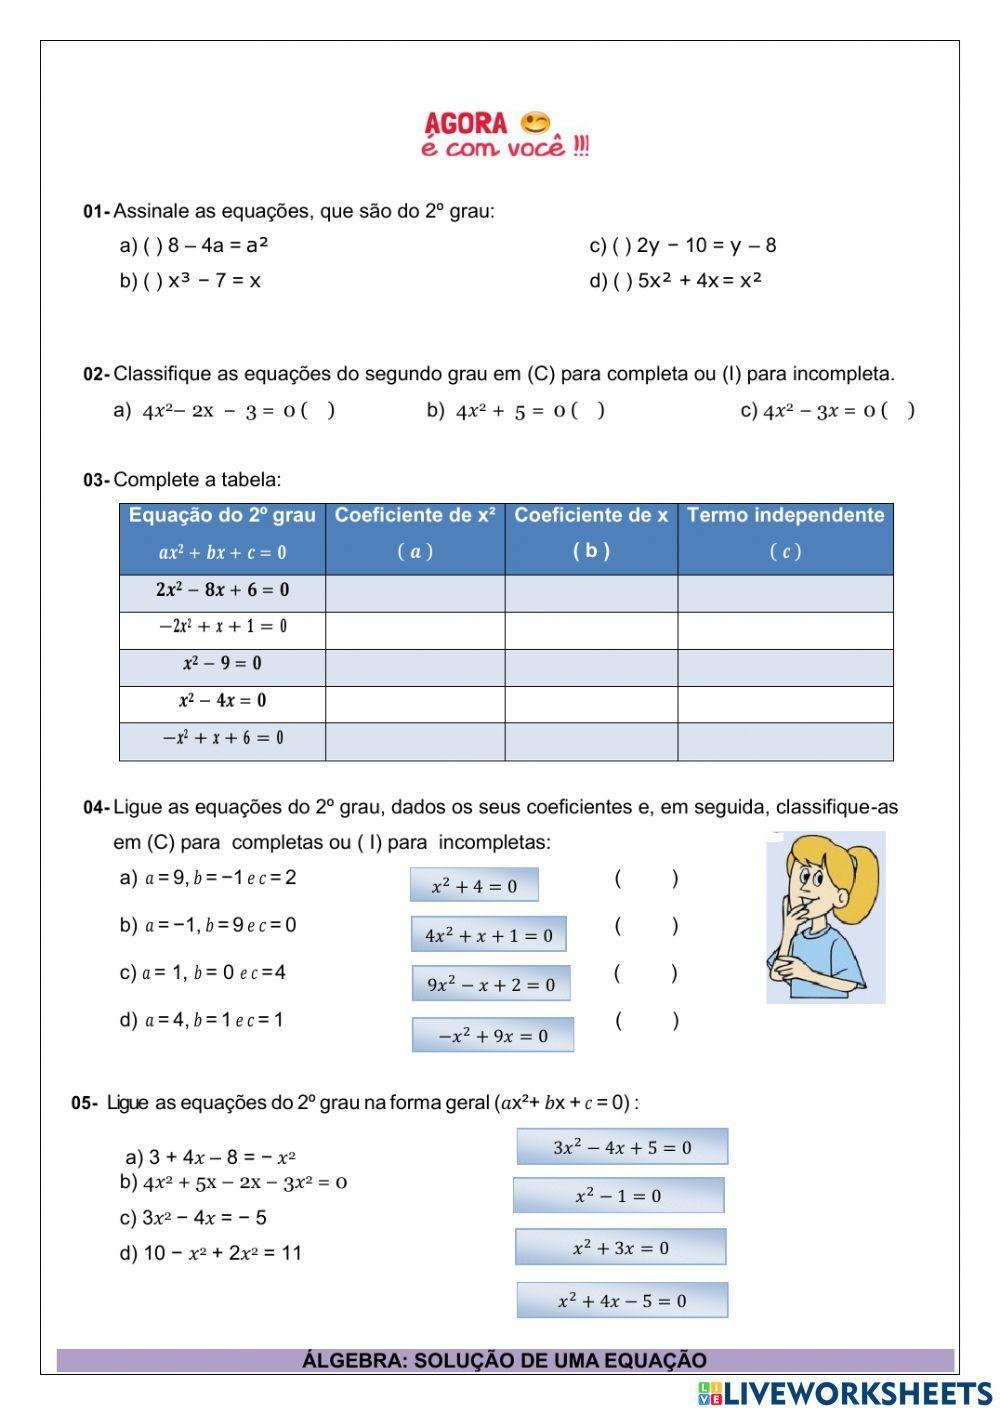 ✨ Quiz de Matemática Acerte essas perguntas de Equação do 2° Grau #equ